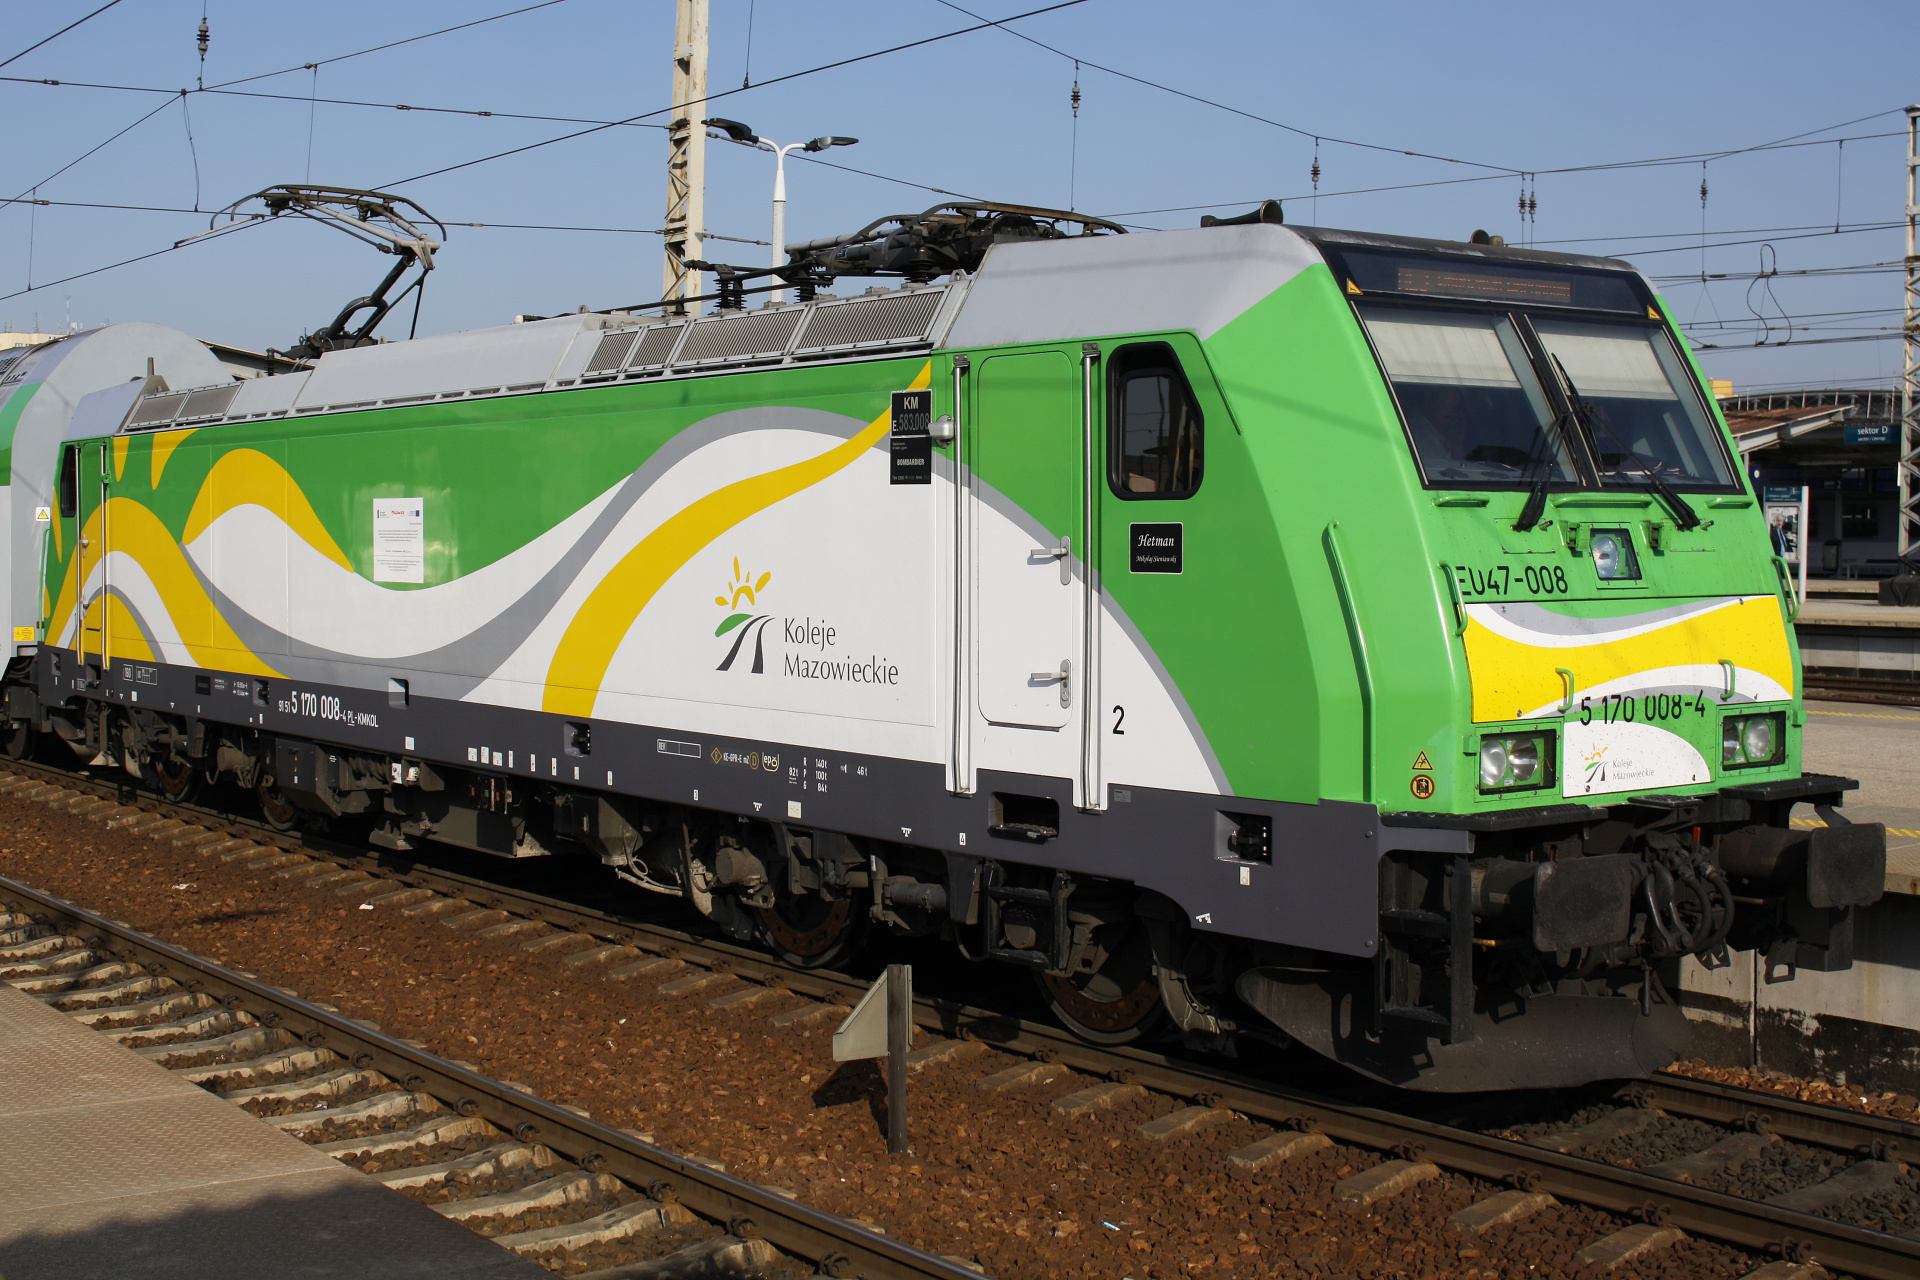 P160DC E583 EU47-008 (Hetman) (Pojazdy » Pociągi i lokomotywy » Bombardier TRAXX)